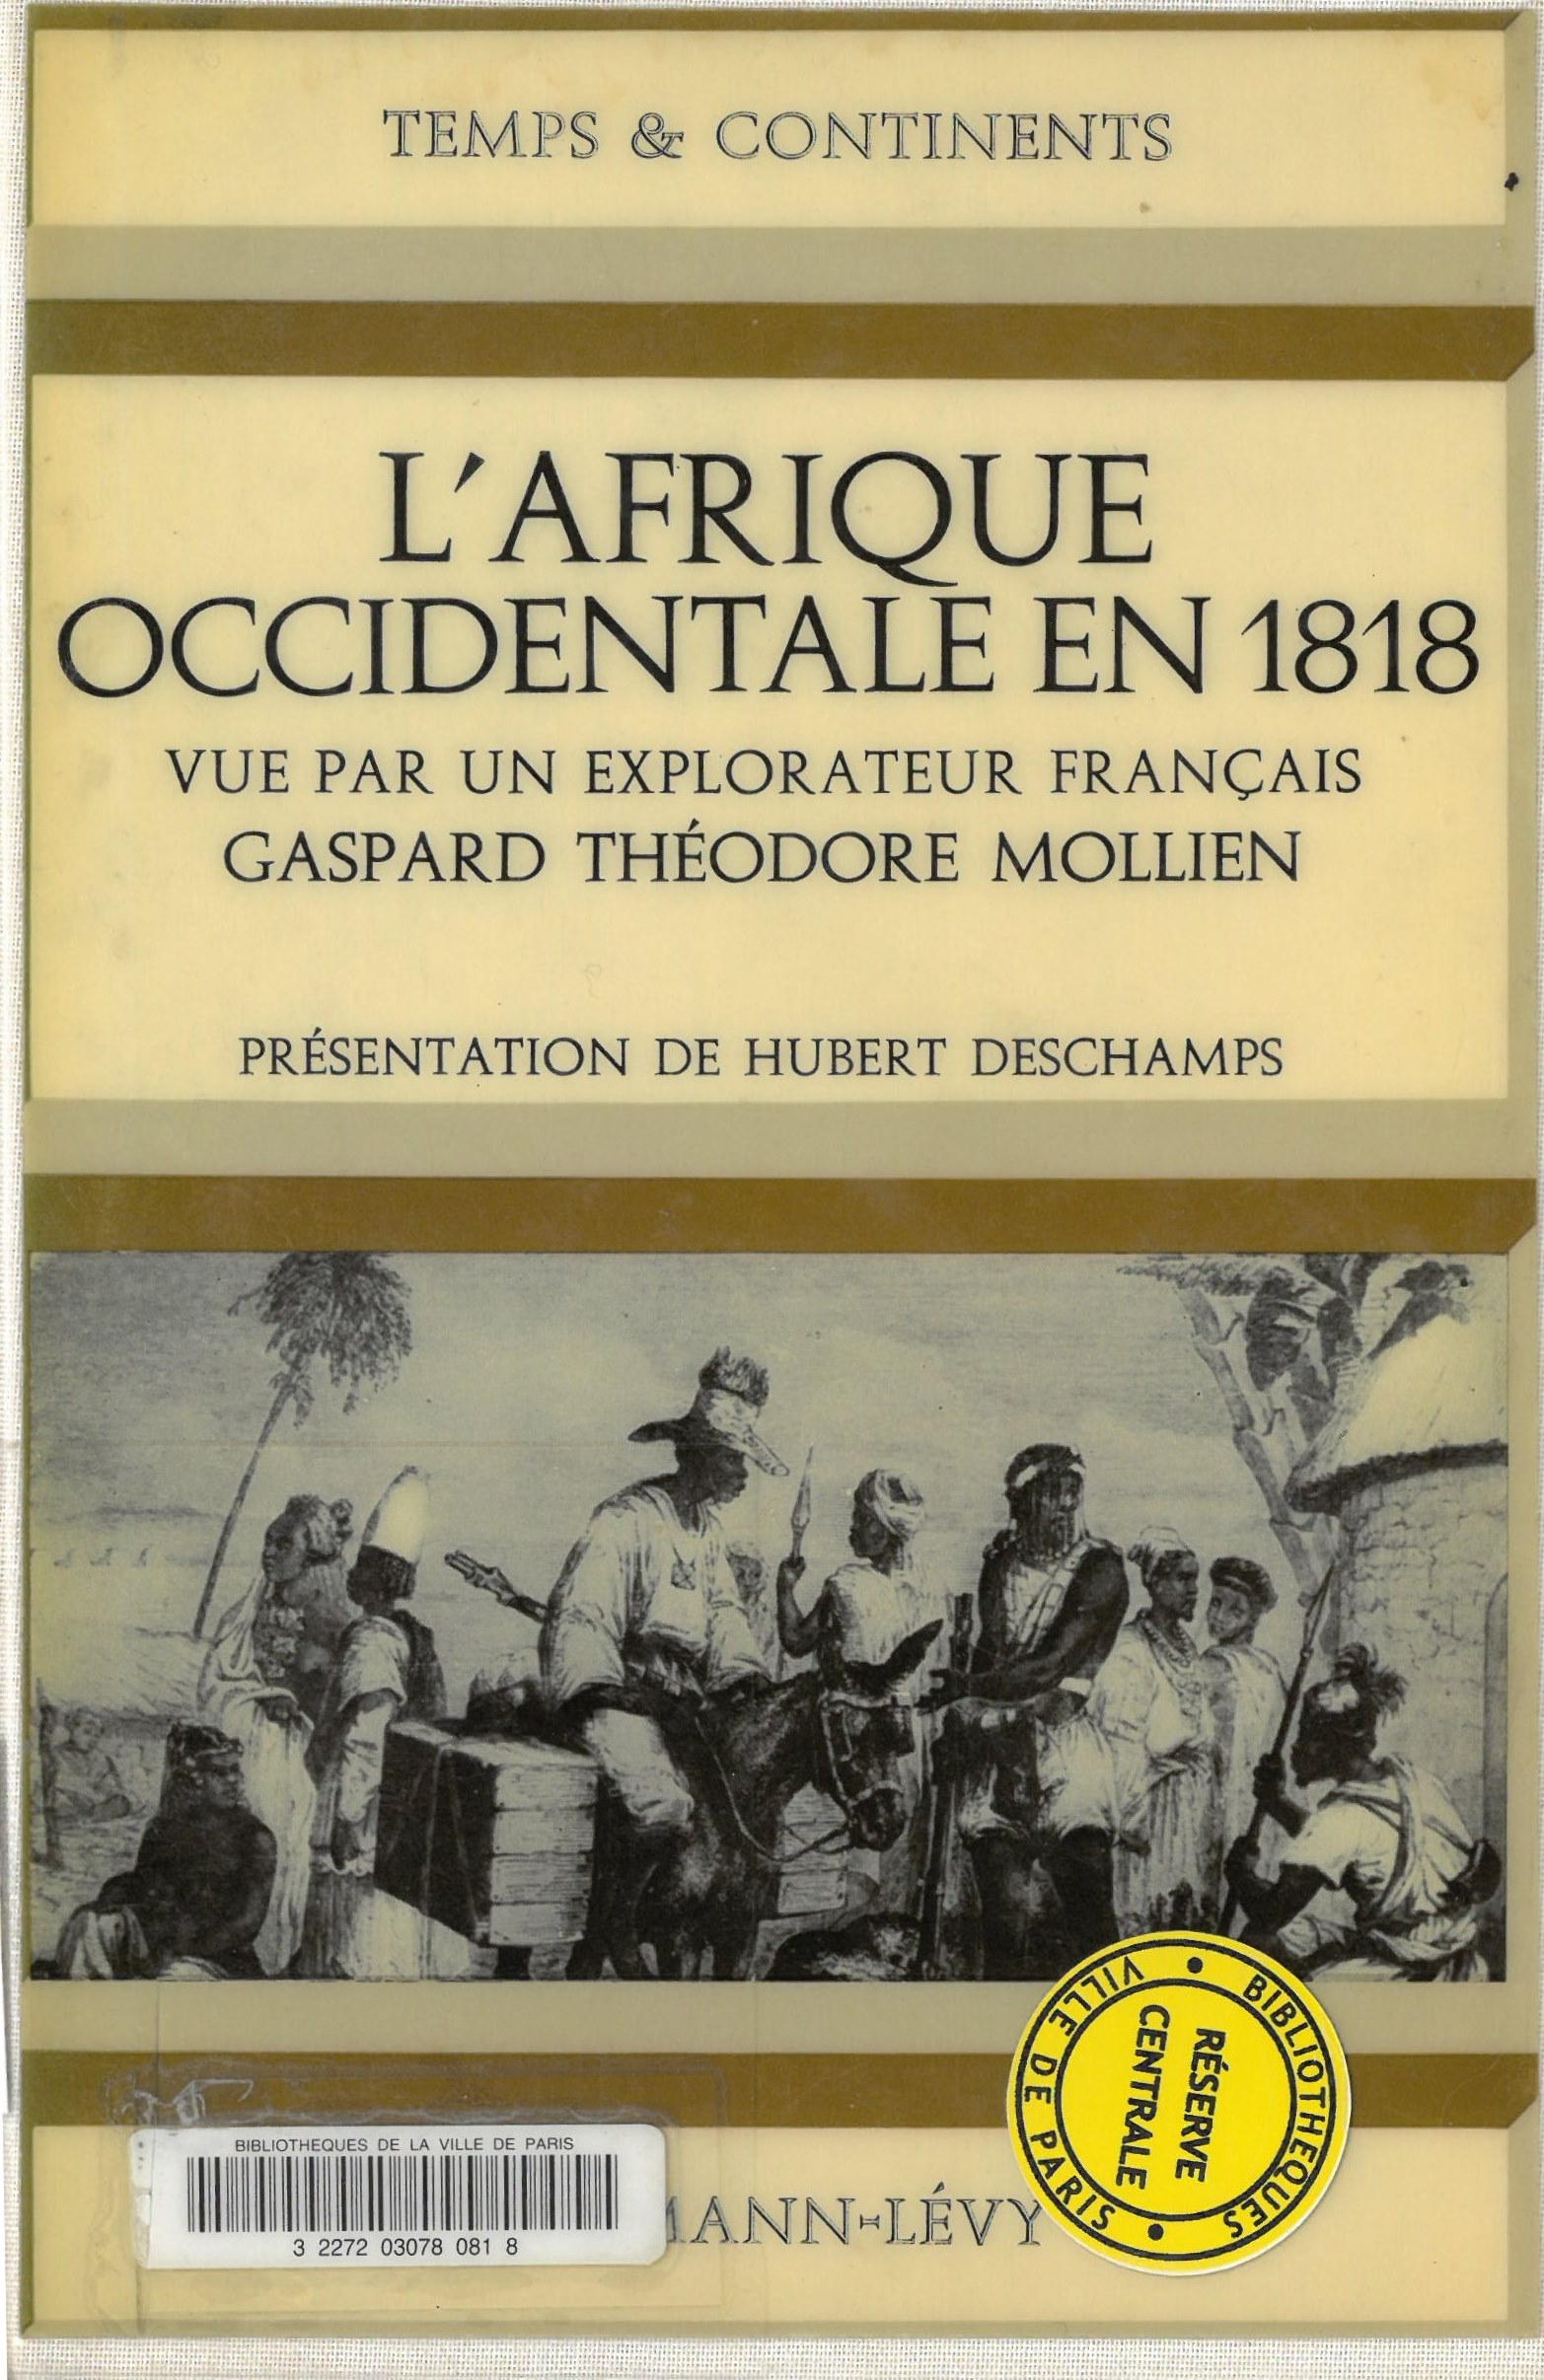 L'Afrique occidentale en 1818 vue par un explorateur français | Gaspard Théodore Mollien